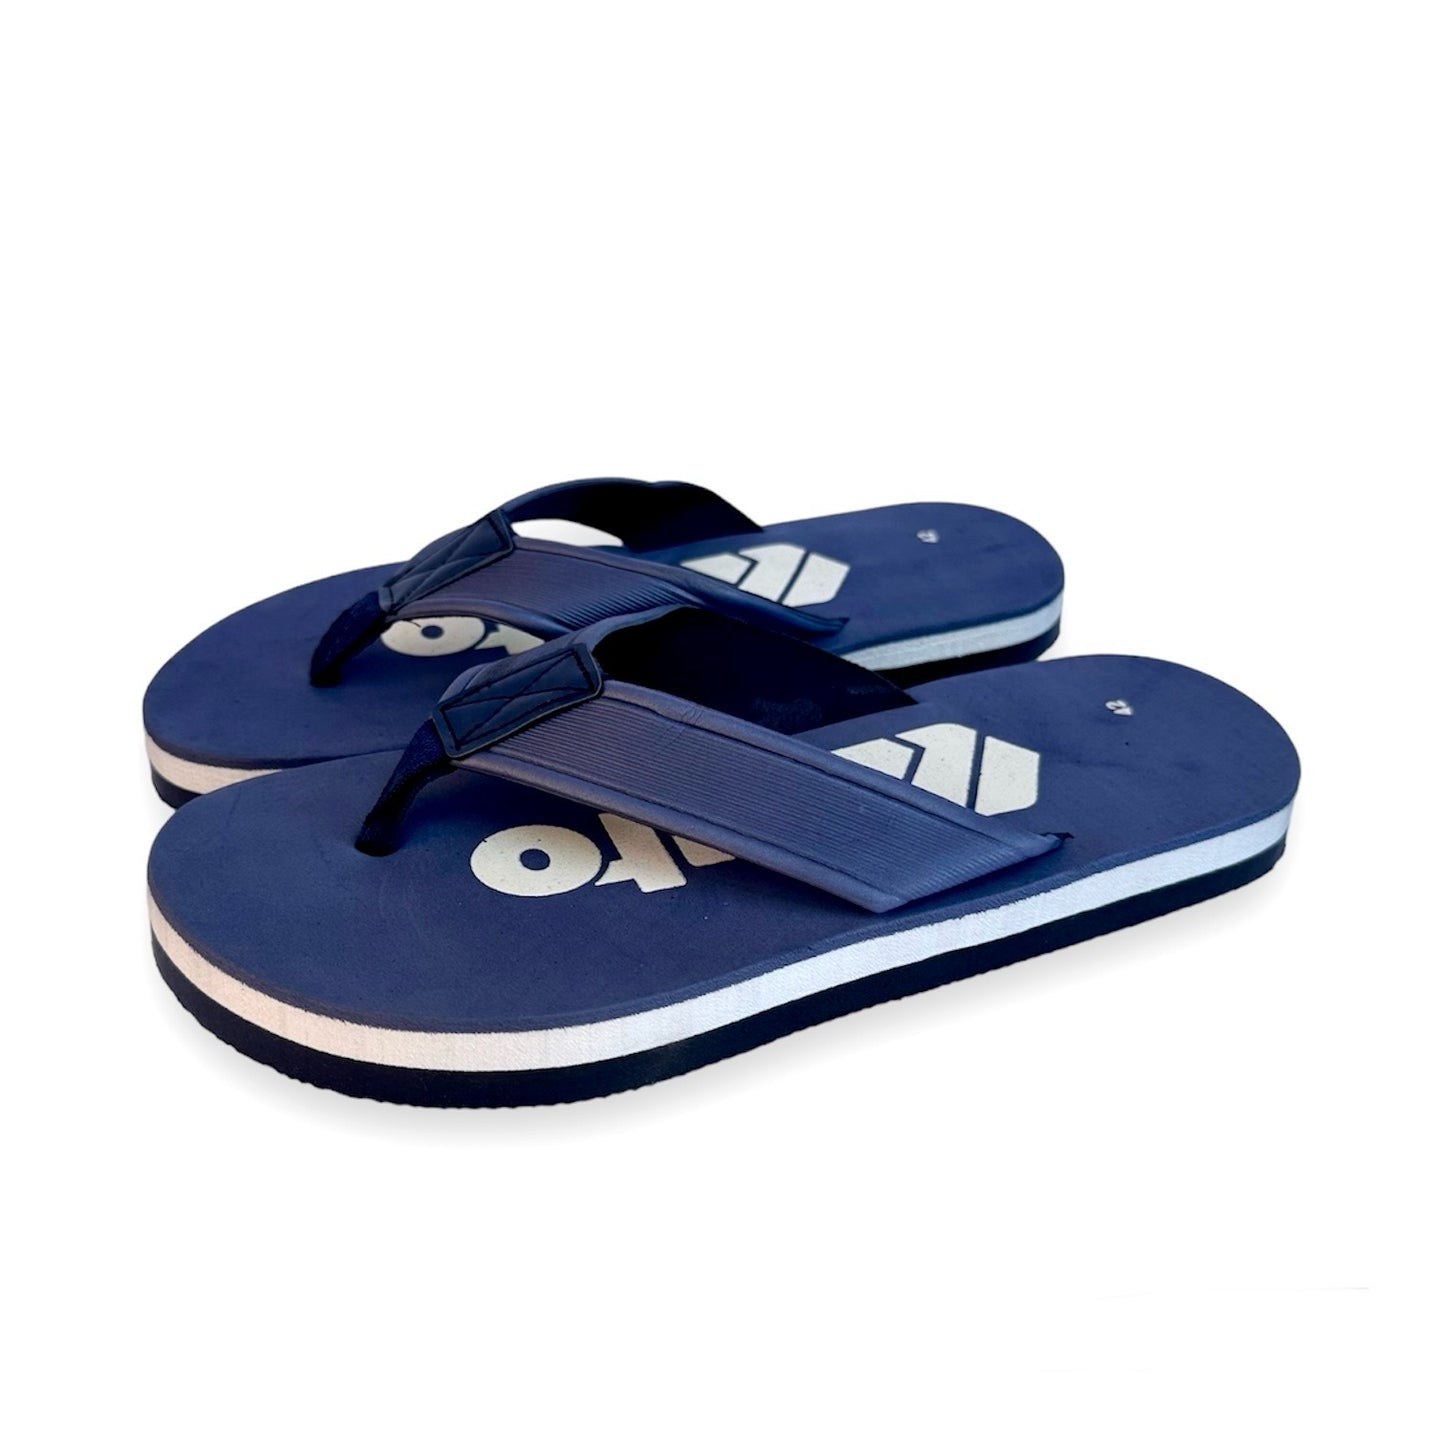 K-I-T-O blue slippers